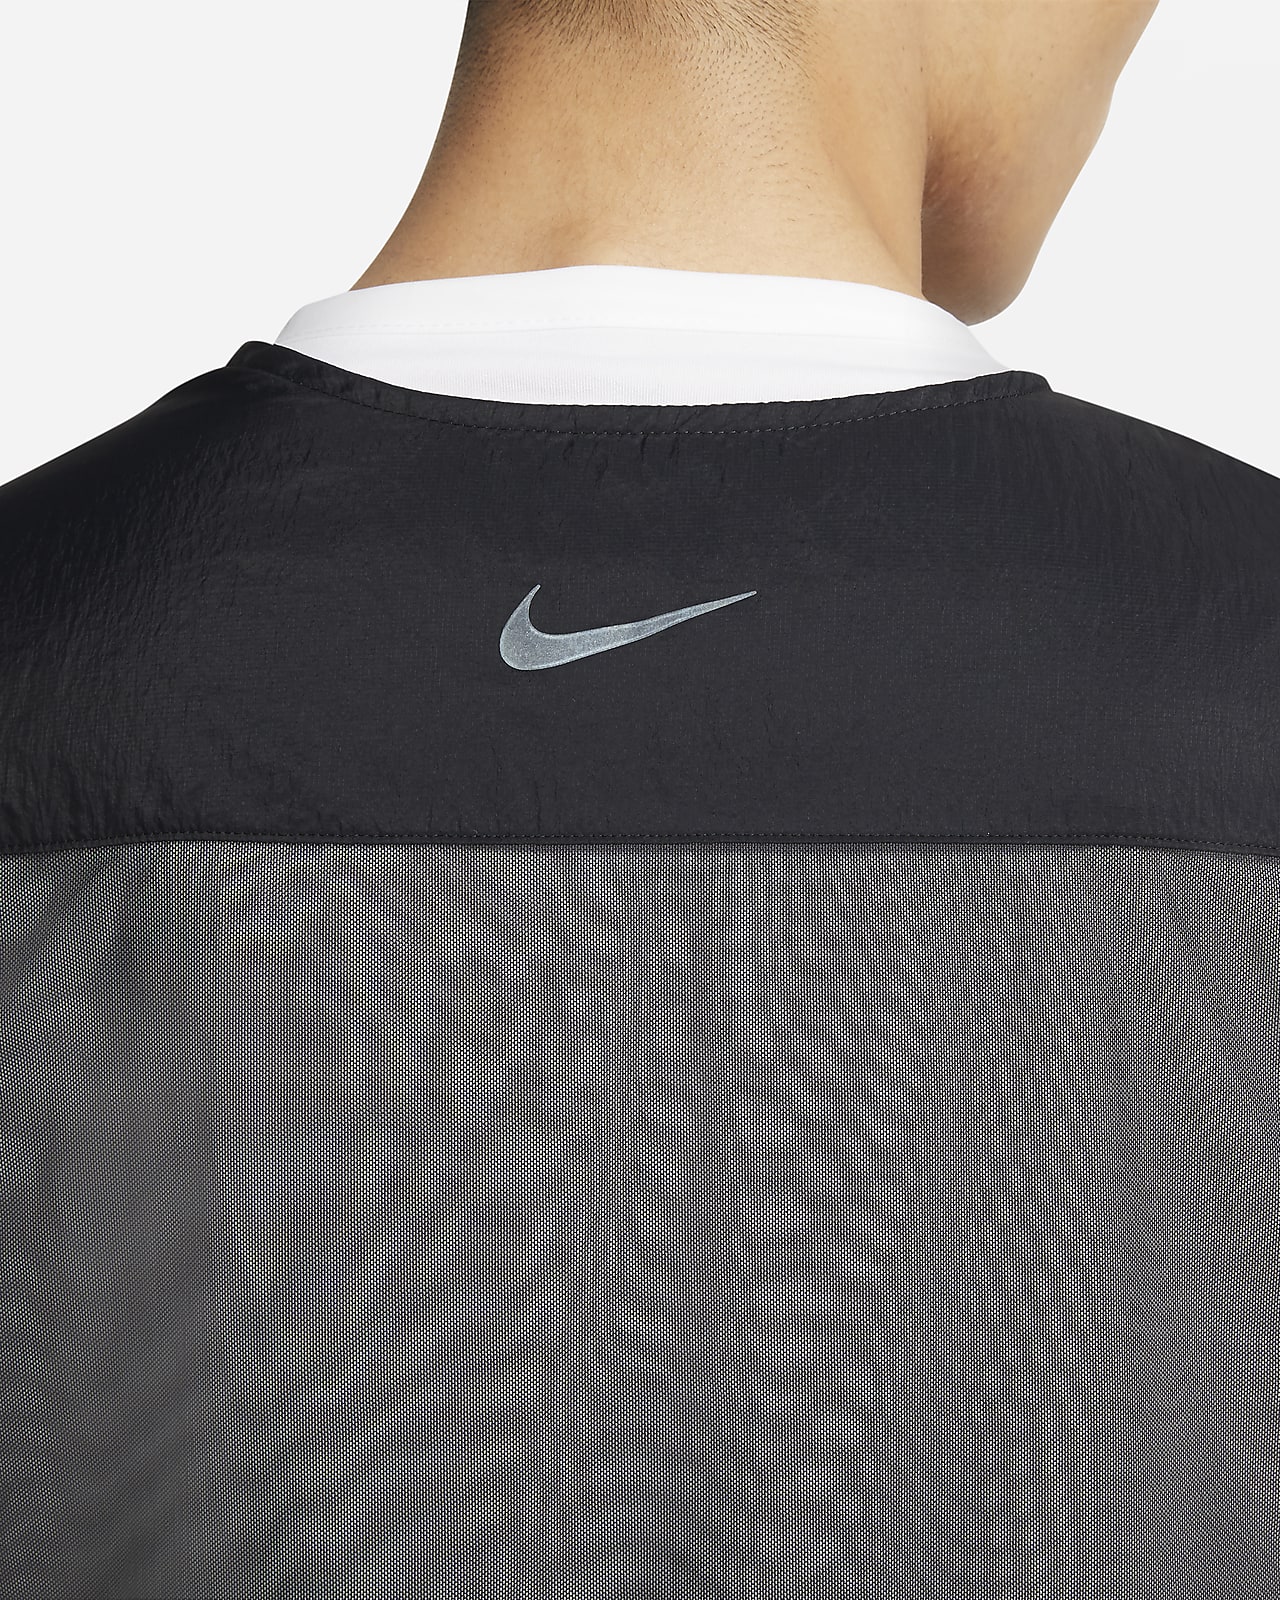 Nike公式 ナイキ ラン ディビジョン ピナクル メンズ ランニングベスト オンラインストア 通販サイト